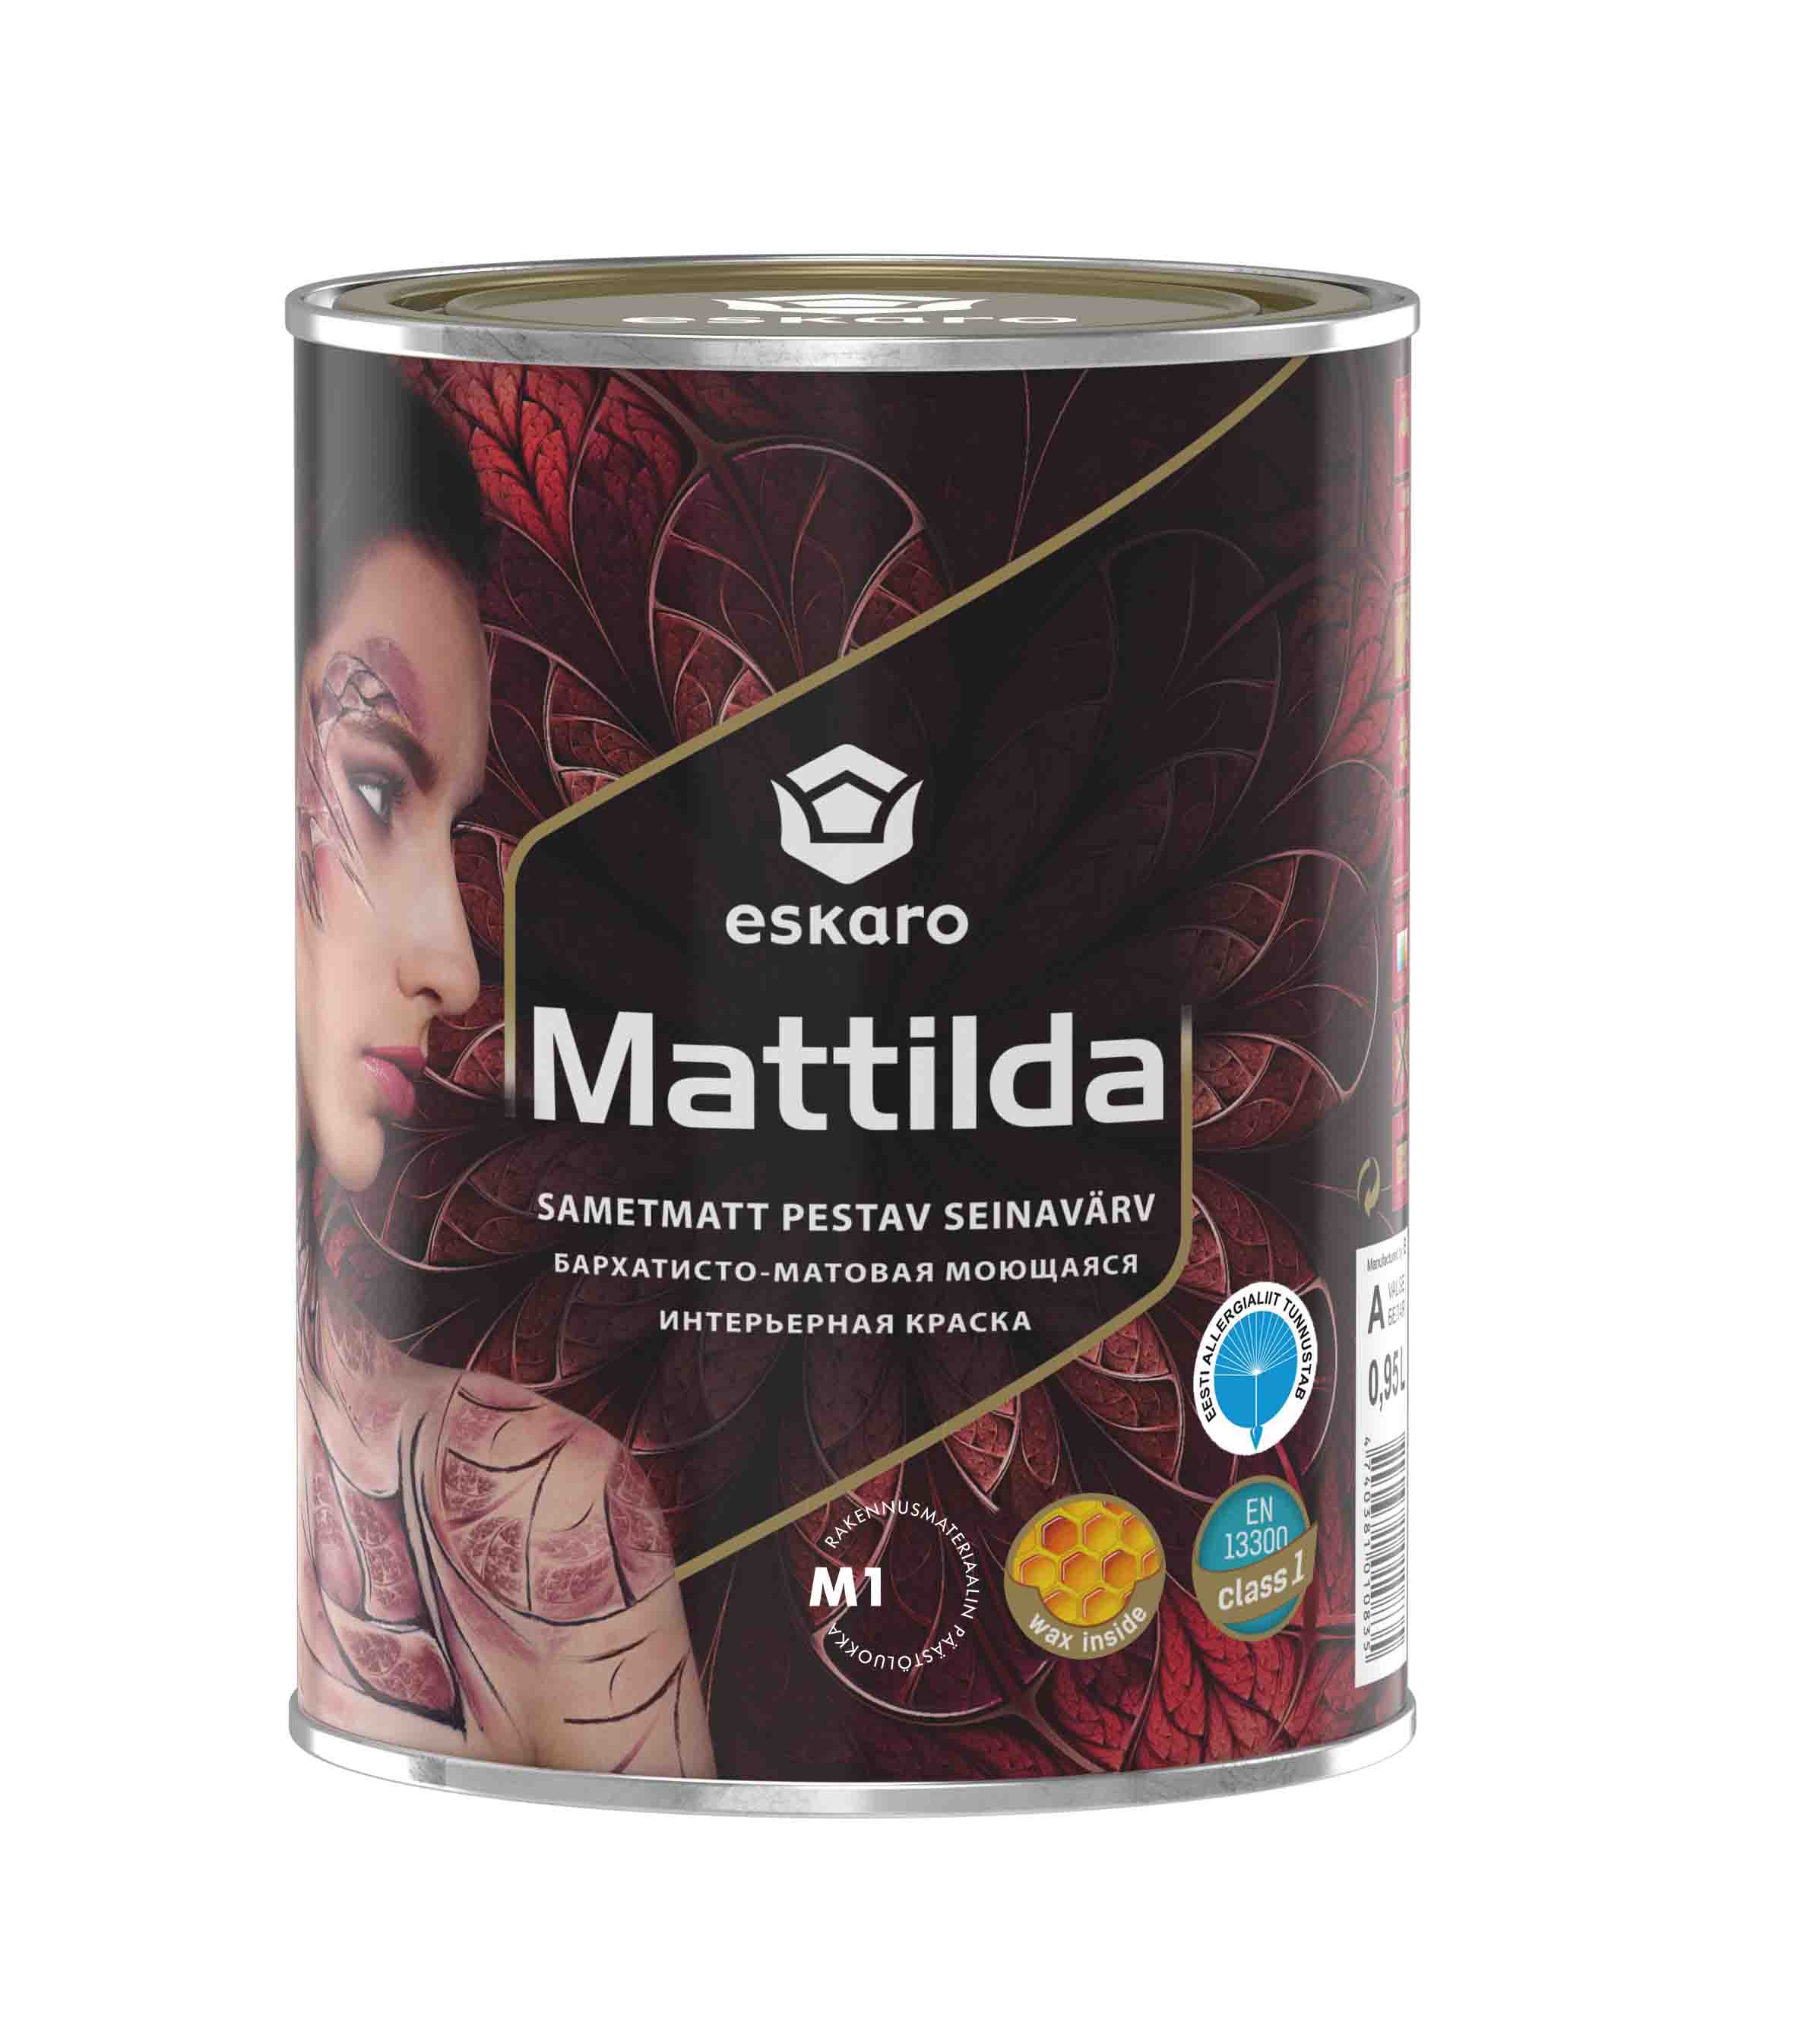 Бархатисто-матовая моющаяся интерьерная краска Eskaro Mattilda (База А - белая) 0.95 л